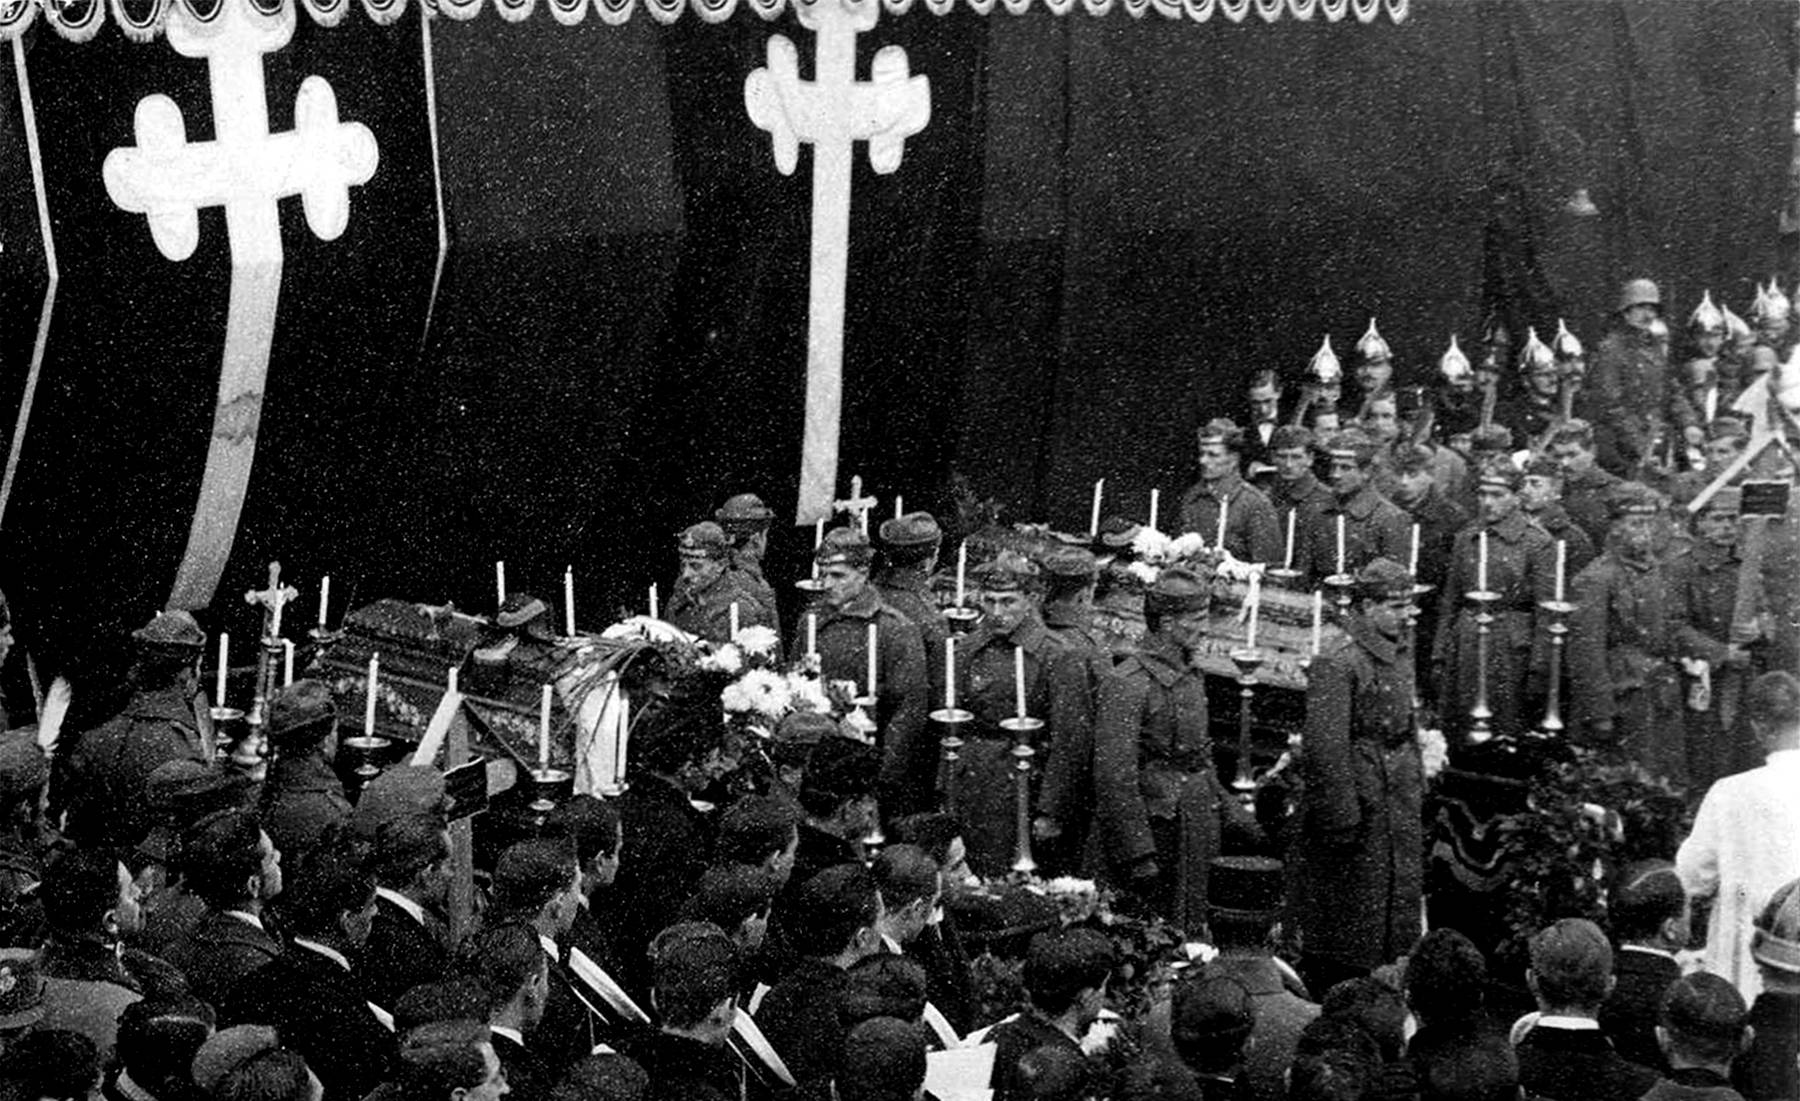 Csicsery László és Máhr Jenő, a monitorlázadás alatt hősi halált halt sorhajóhadnagyok temetése